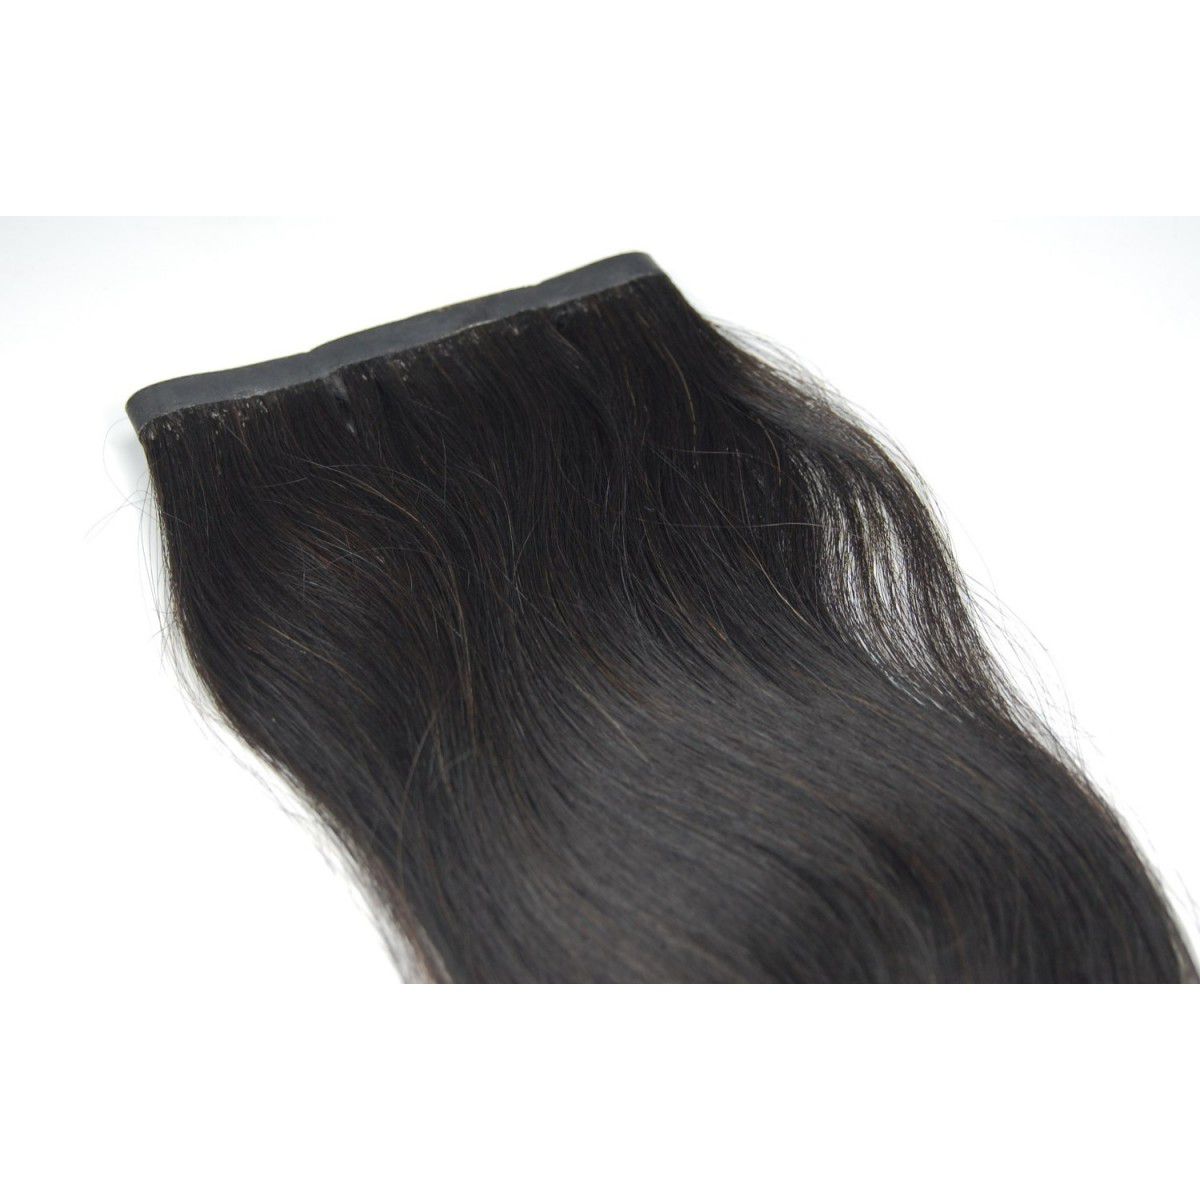 Mega Hair Fita Adesiva Nanopele Castanho 60 Cm - 2 Telas de 30cm cada -  Espaço Hair Brasil